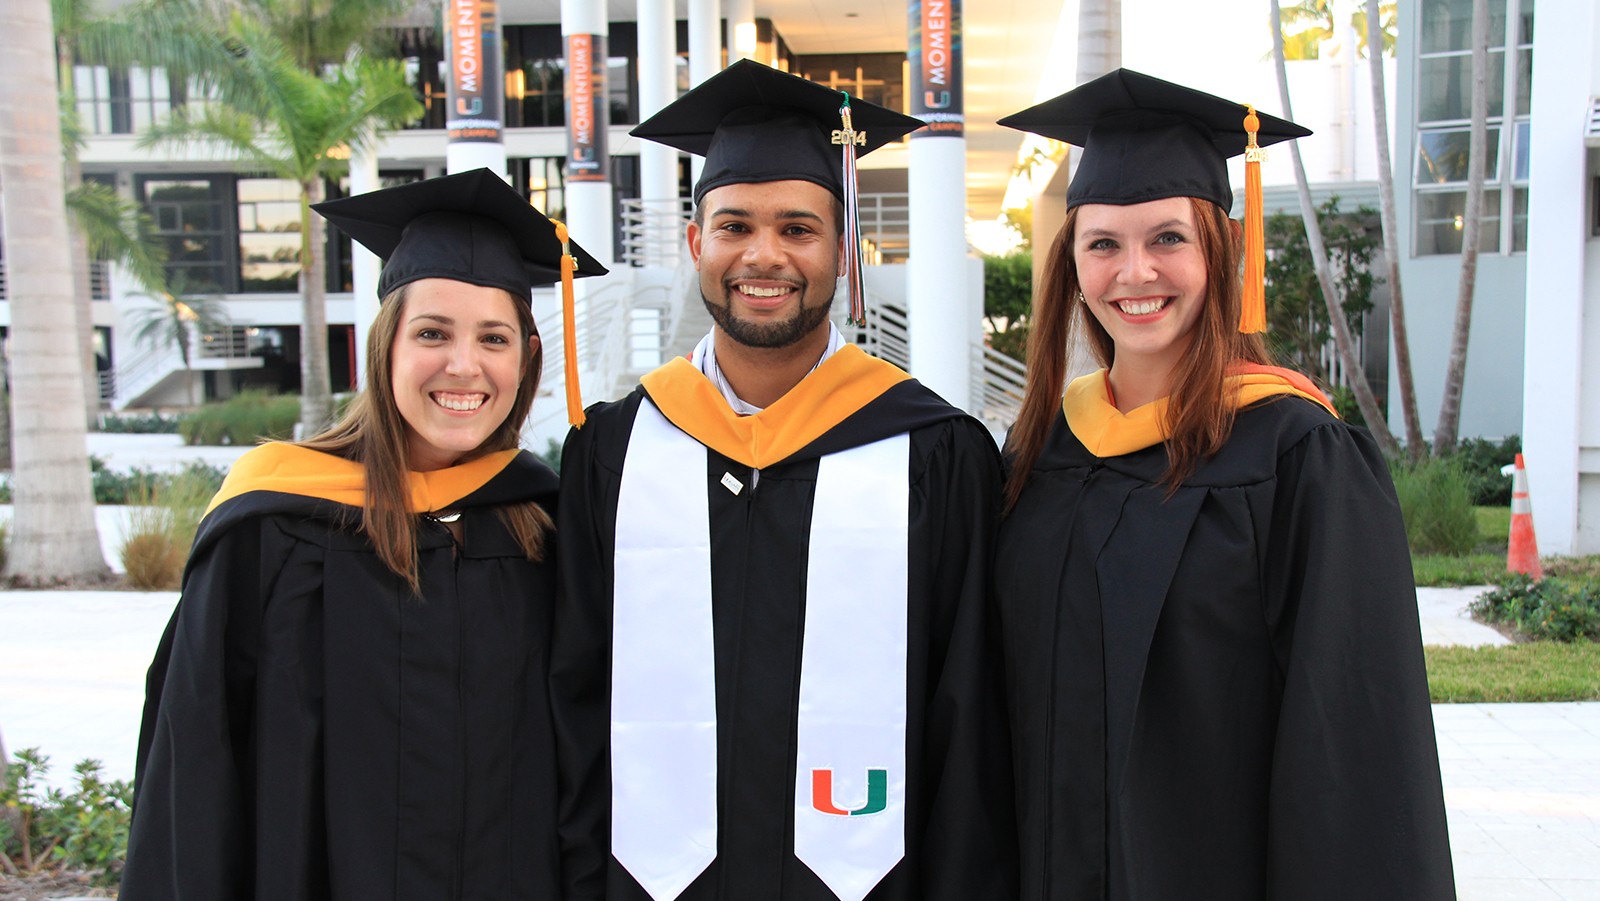 Graduados de la Escuela Rosenstiel de la Universidad de Miami que trabajaron con la NOAA durante su investigación de postgrado. De izquierda a derecha: Shannon Jones, Austin Flinn y Chloe Fleming. Crédito de la imagen: NOAA